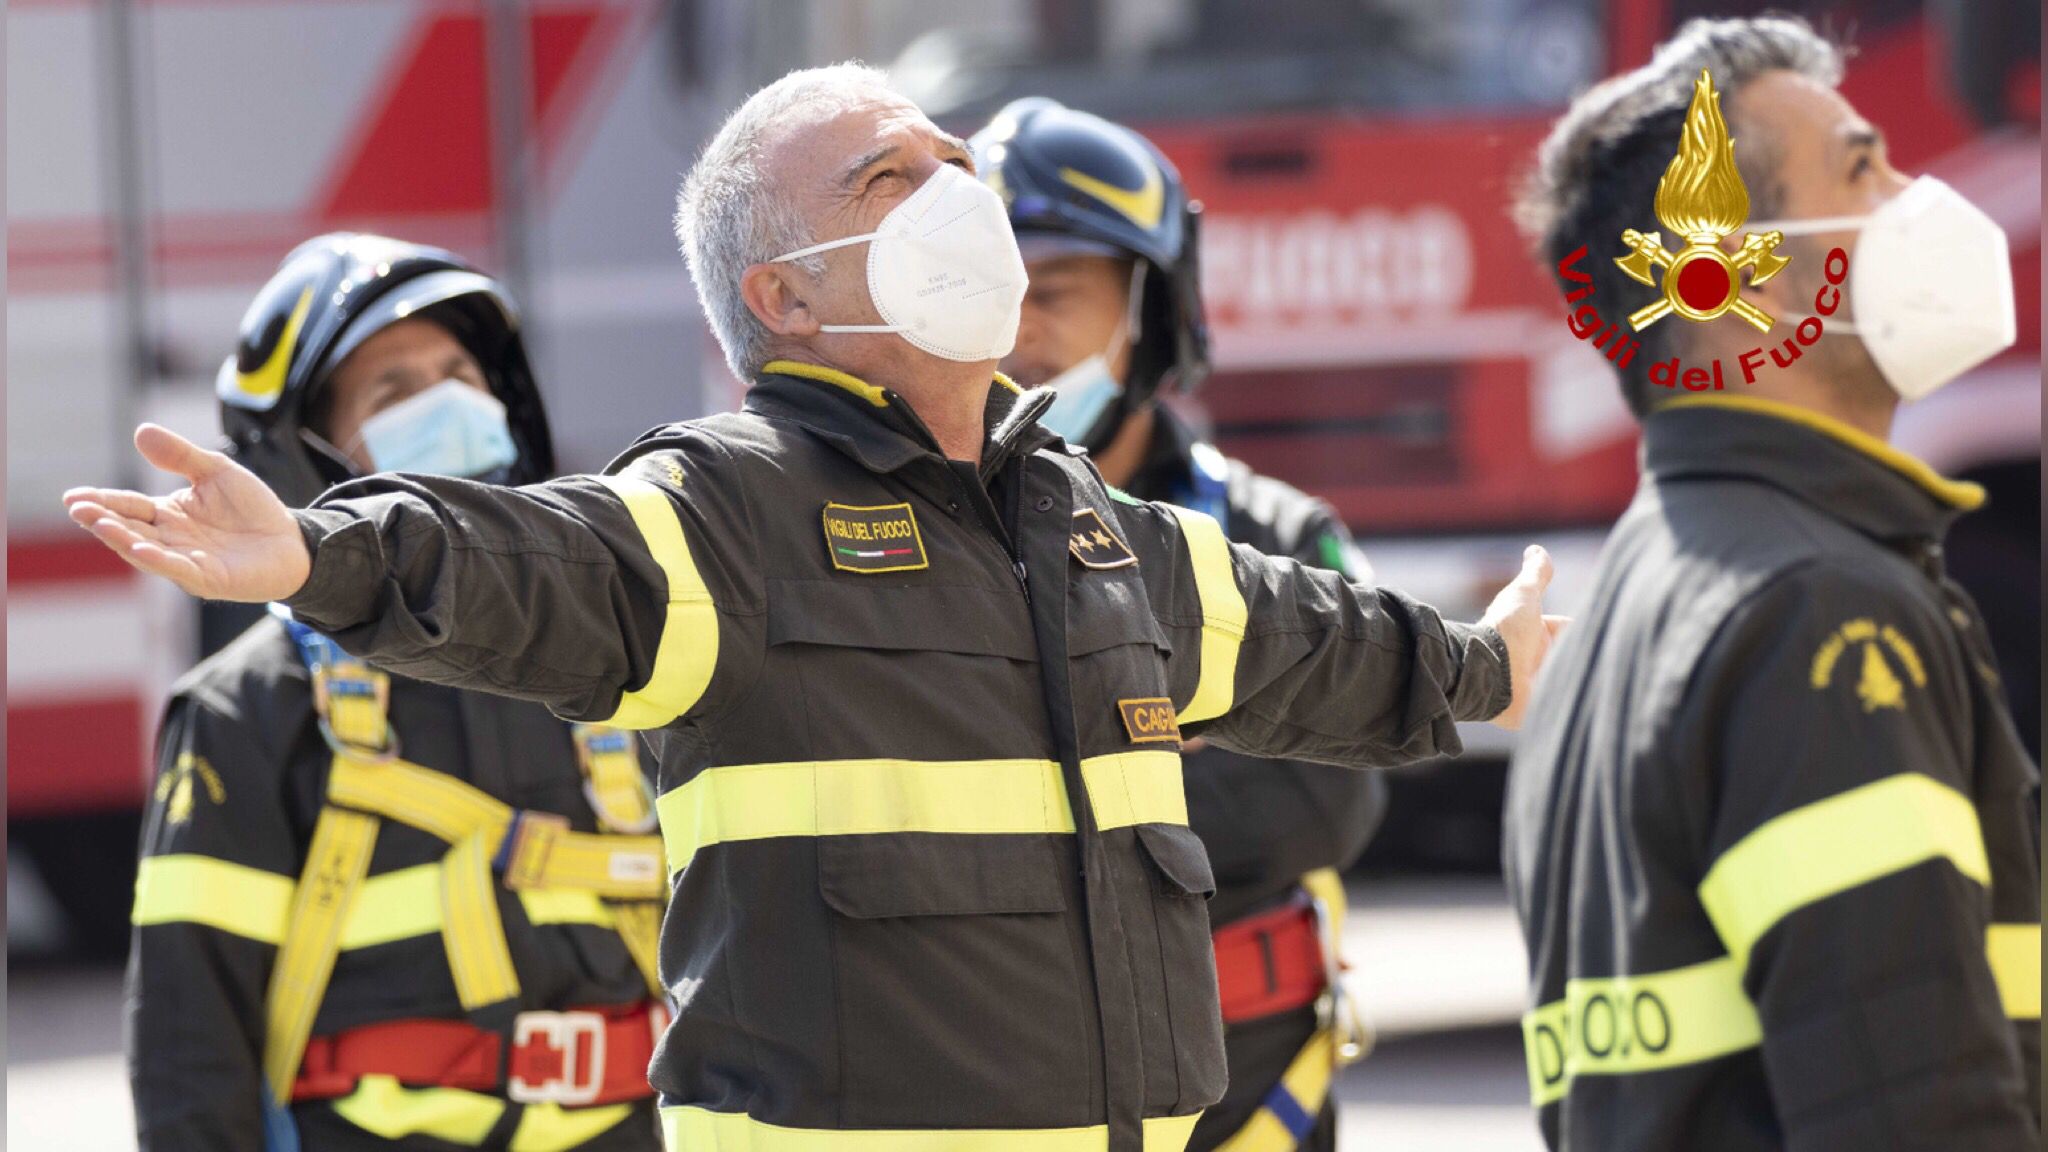 L'operatore Marco Cocco va in pensione: il saluto dei Vigili del fuoco